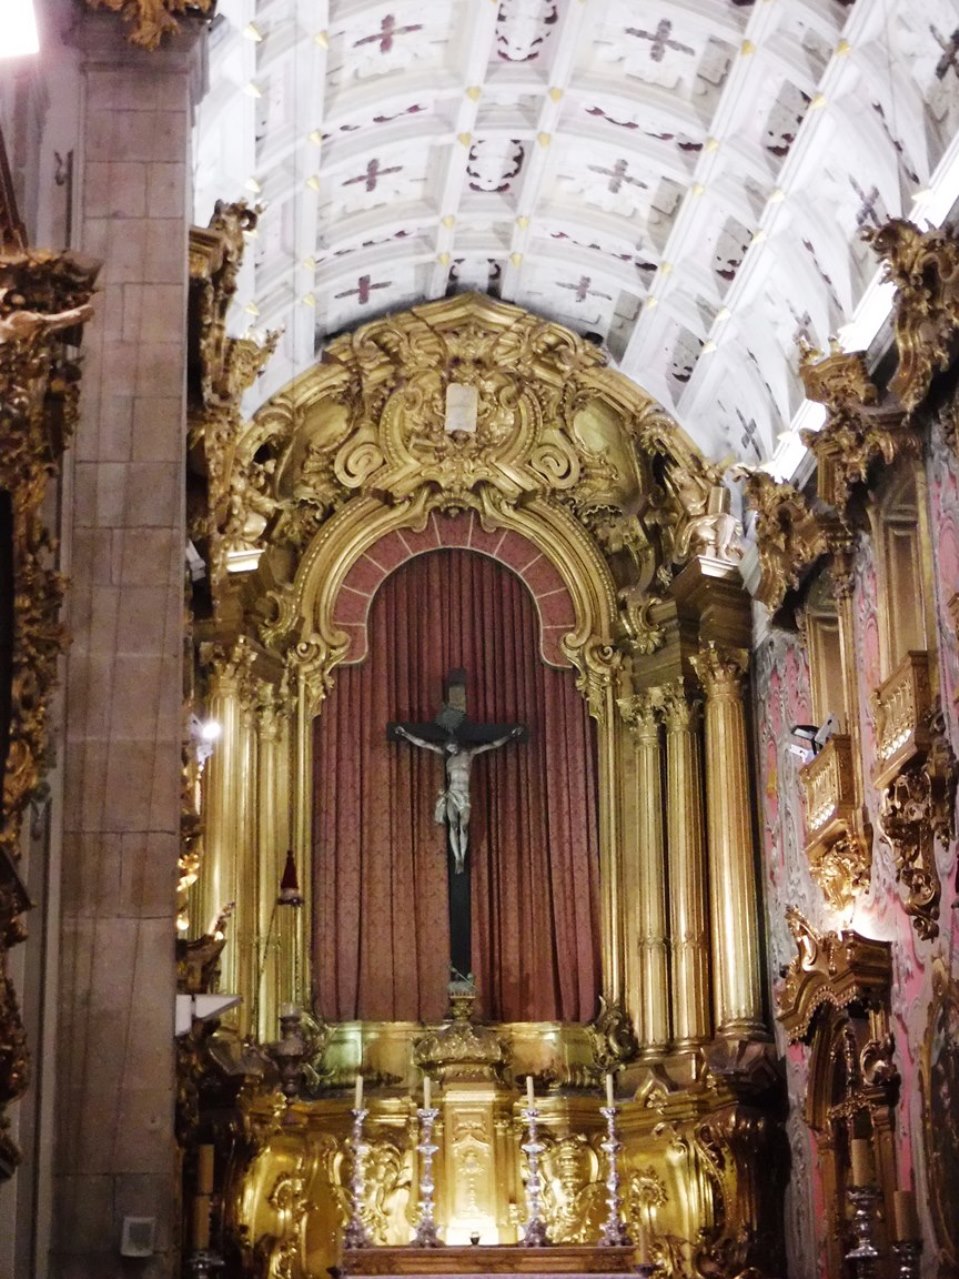 Le choeur de l'église de Santa Cruz avec la voute richement décorée